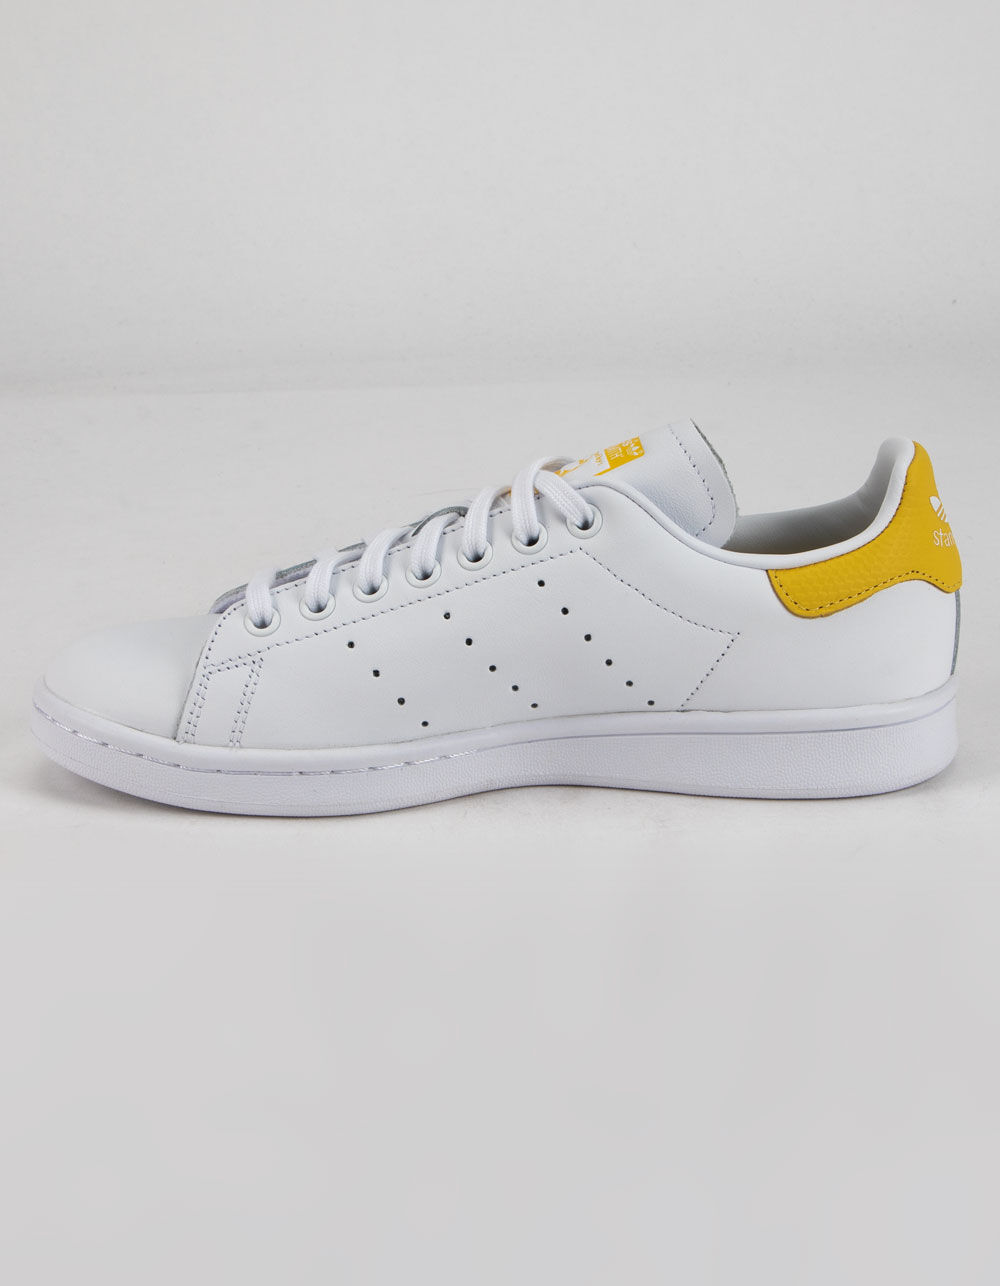 ADIDAS Stan Smith Womens White & Yellow Shoes - WHITE/YELLOW | Tillys